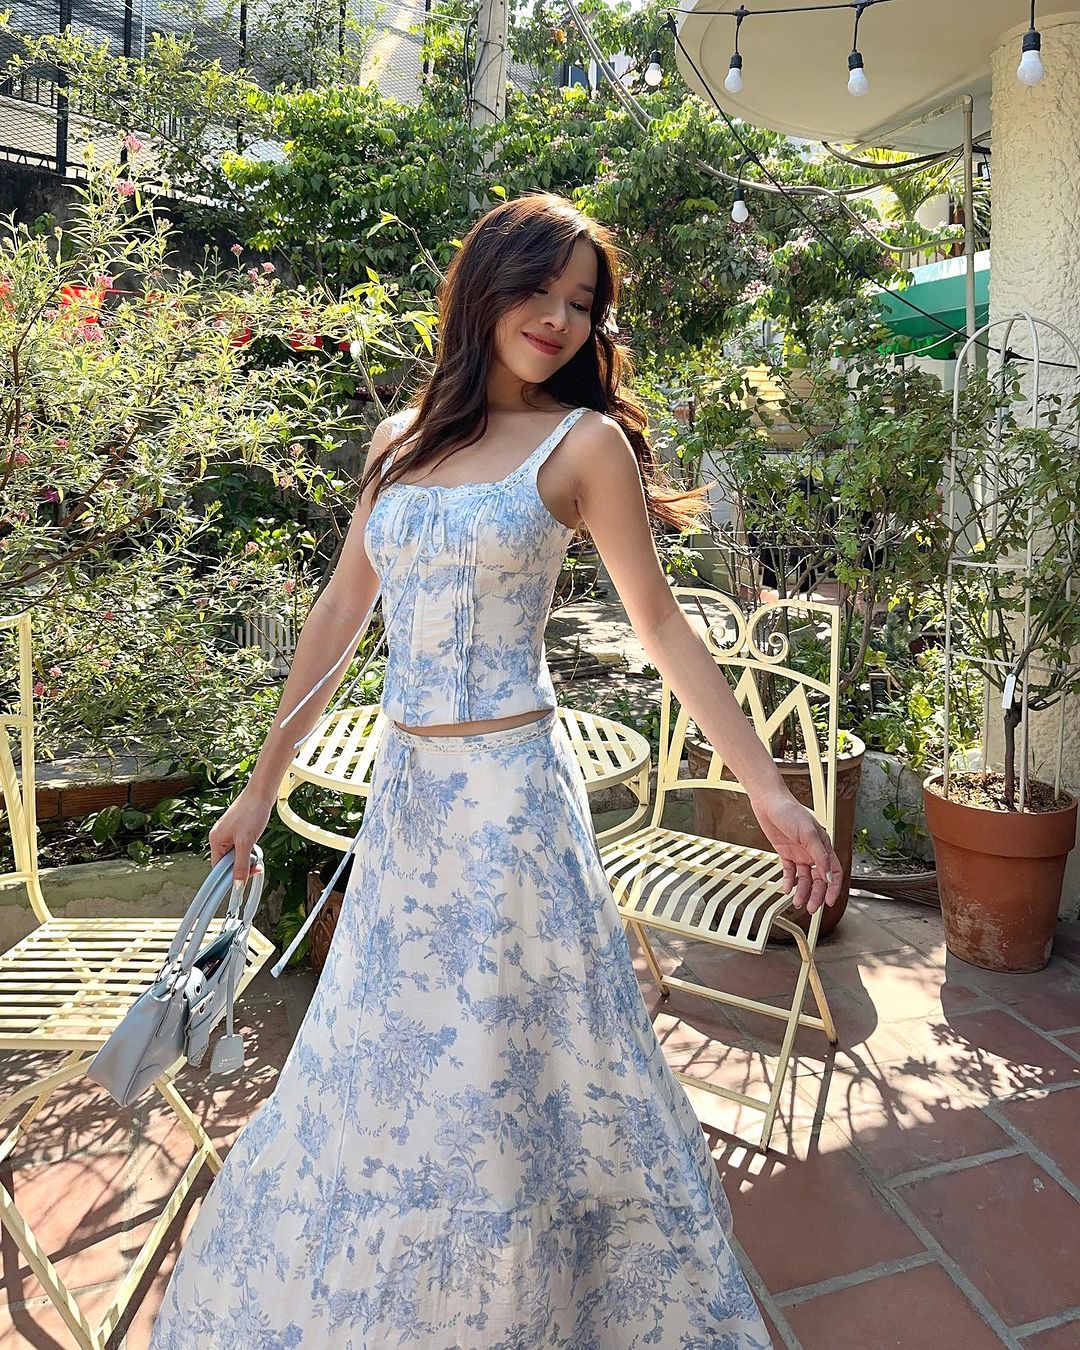 一位穿著 the.lookbook.select 品牌優雅藍色 Toile de Jouy 裙子套裝的女士在陽光明媚的花園裡漫步，花園裡鮮花盛開，配有鍛鐵家具，她微笑著。